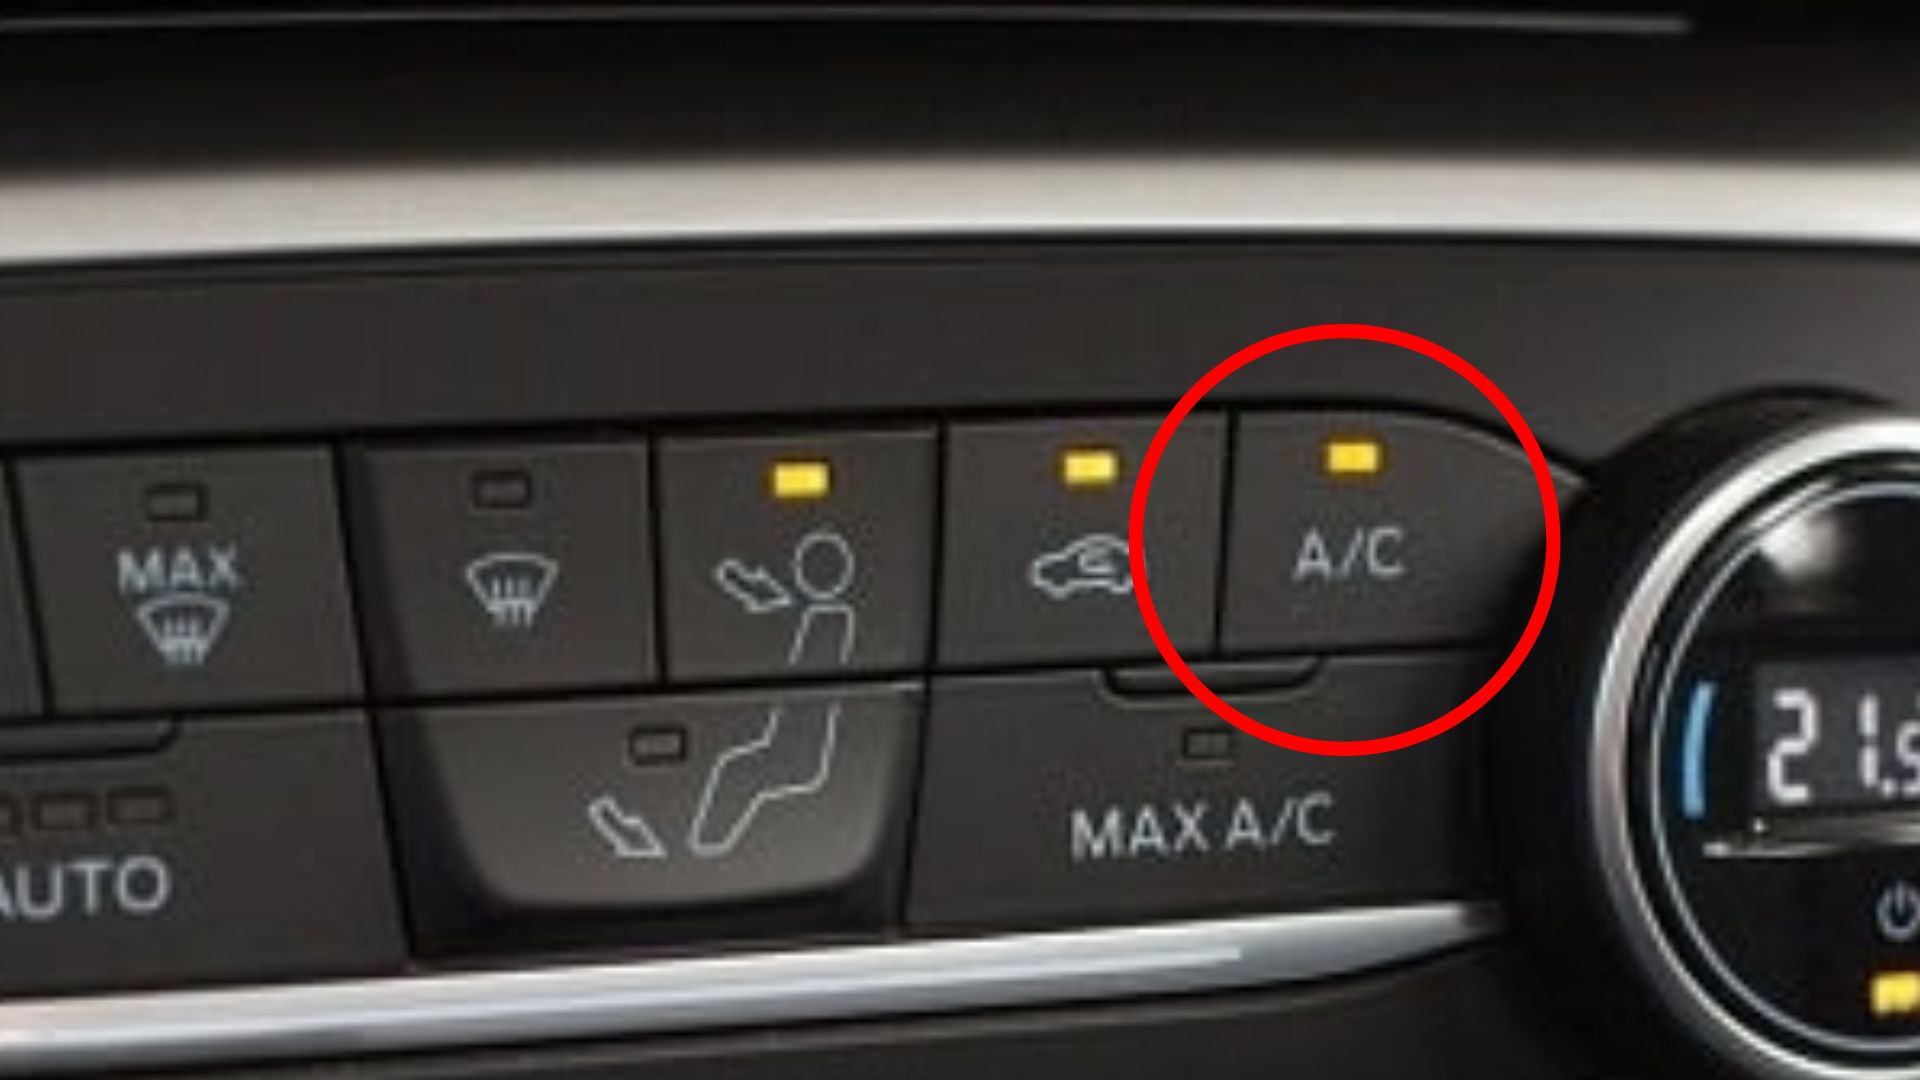 Điều chỉnh nhiệt độ hợp lý để không làm ảnh hưởng đến sức khỏe người ngồi trong xe. Đồ họa: Hoàng Nam